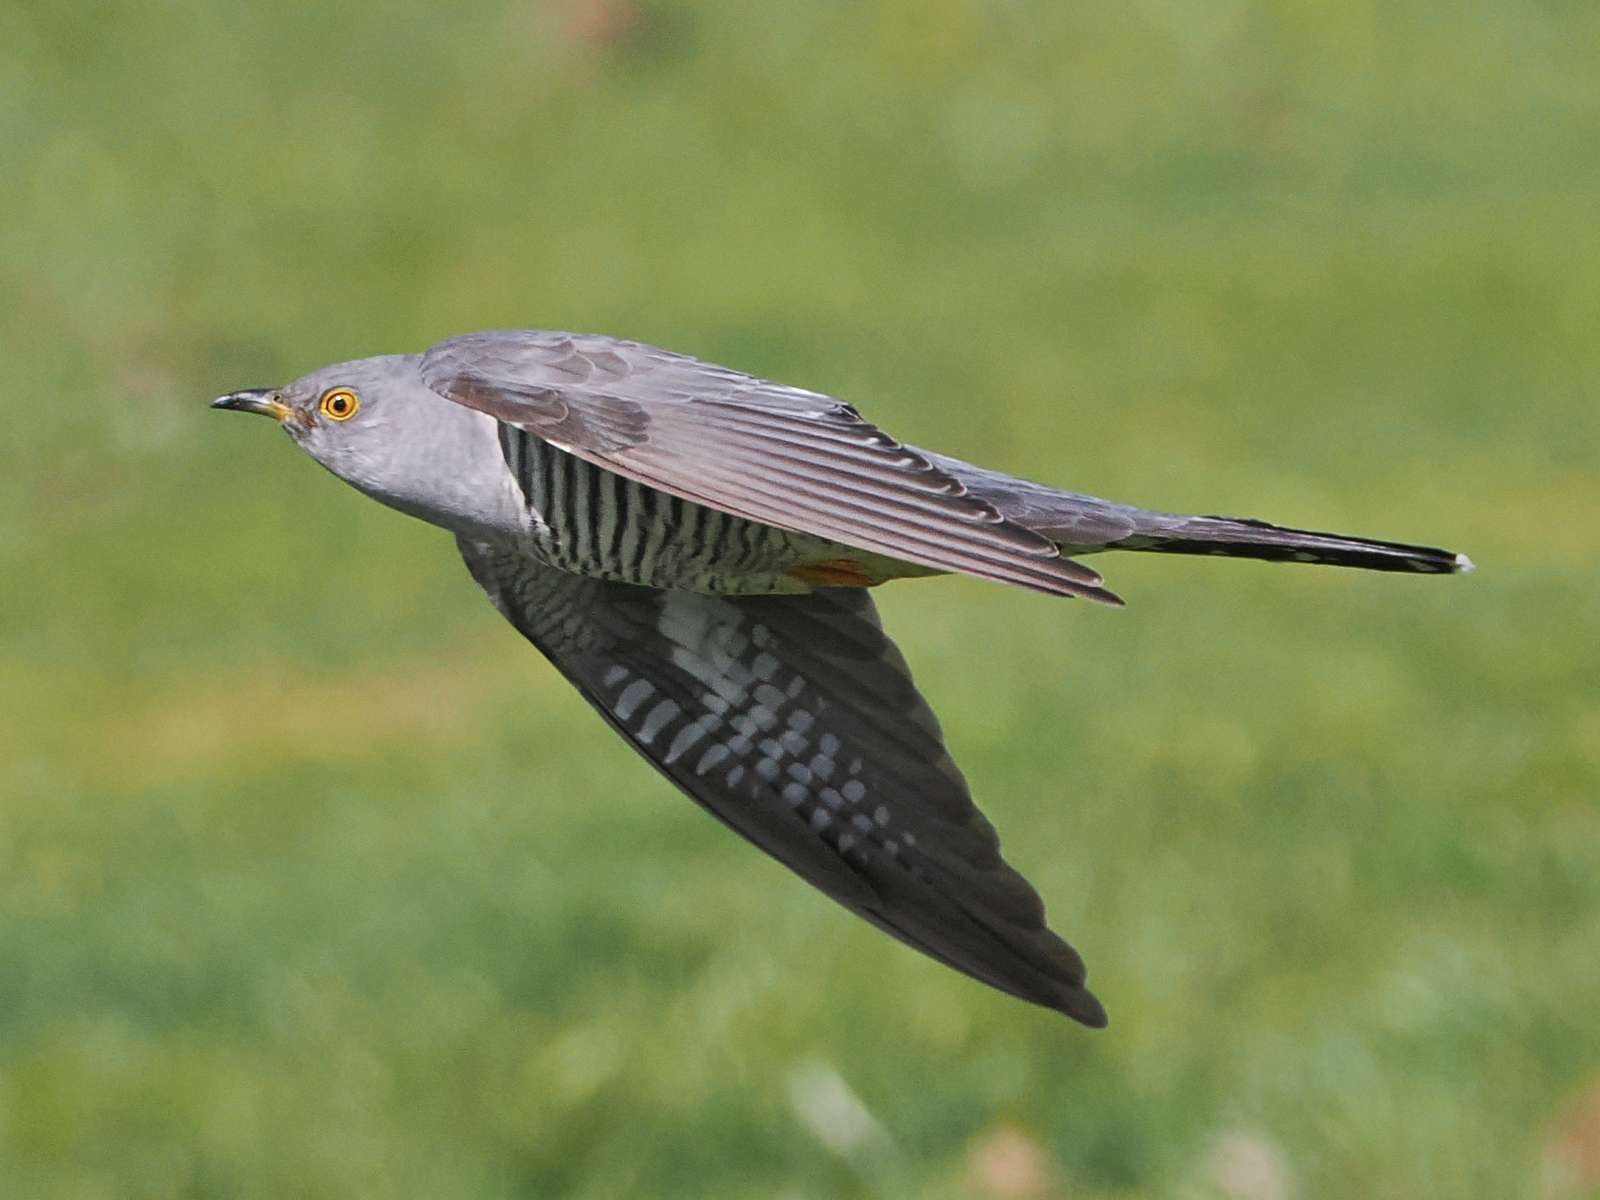 Cuckoo by Tom Wallis at Dartmoor